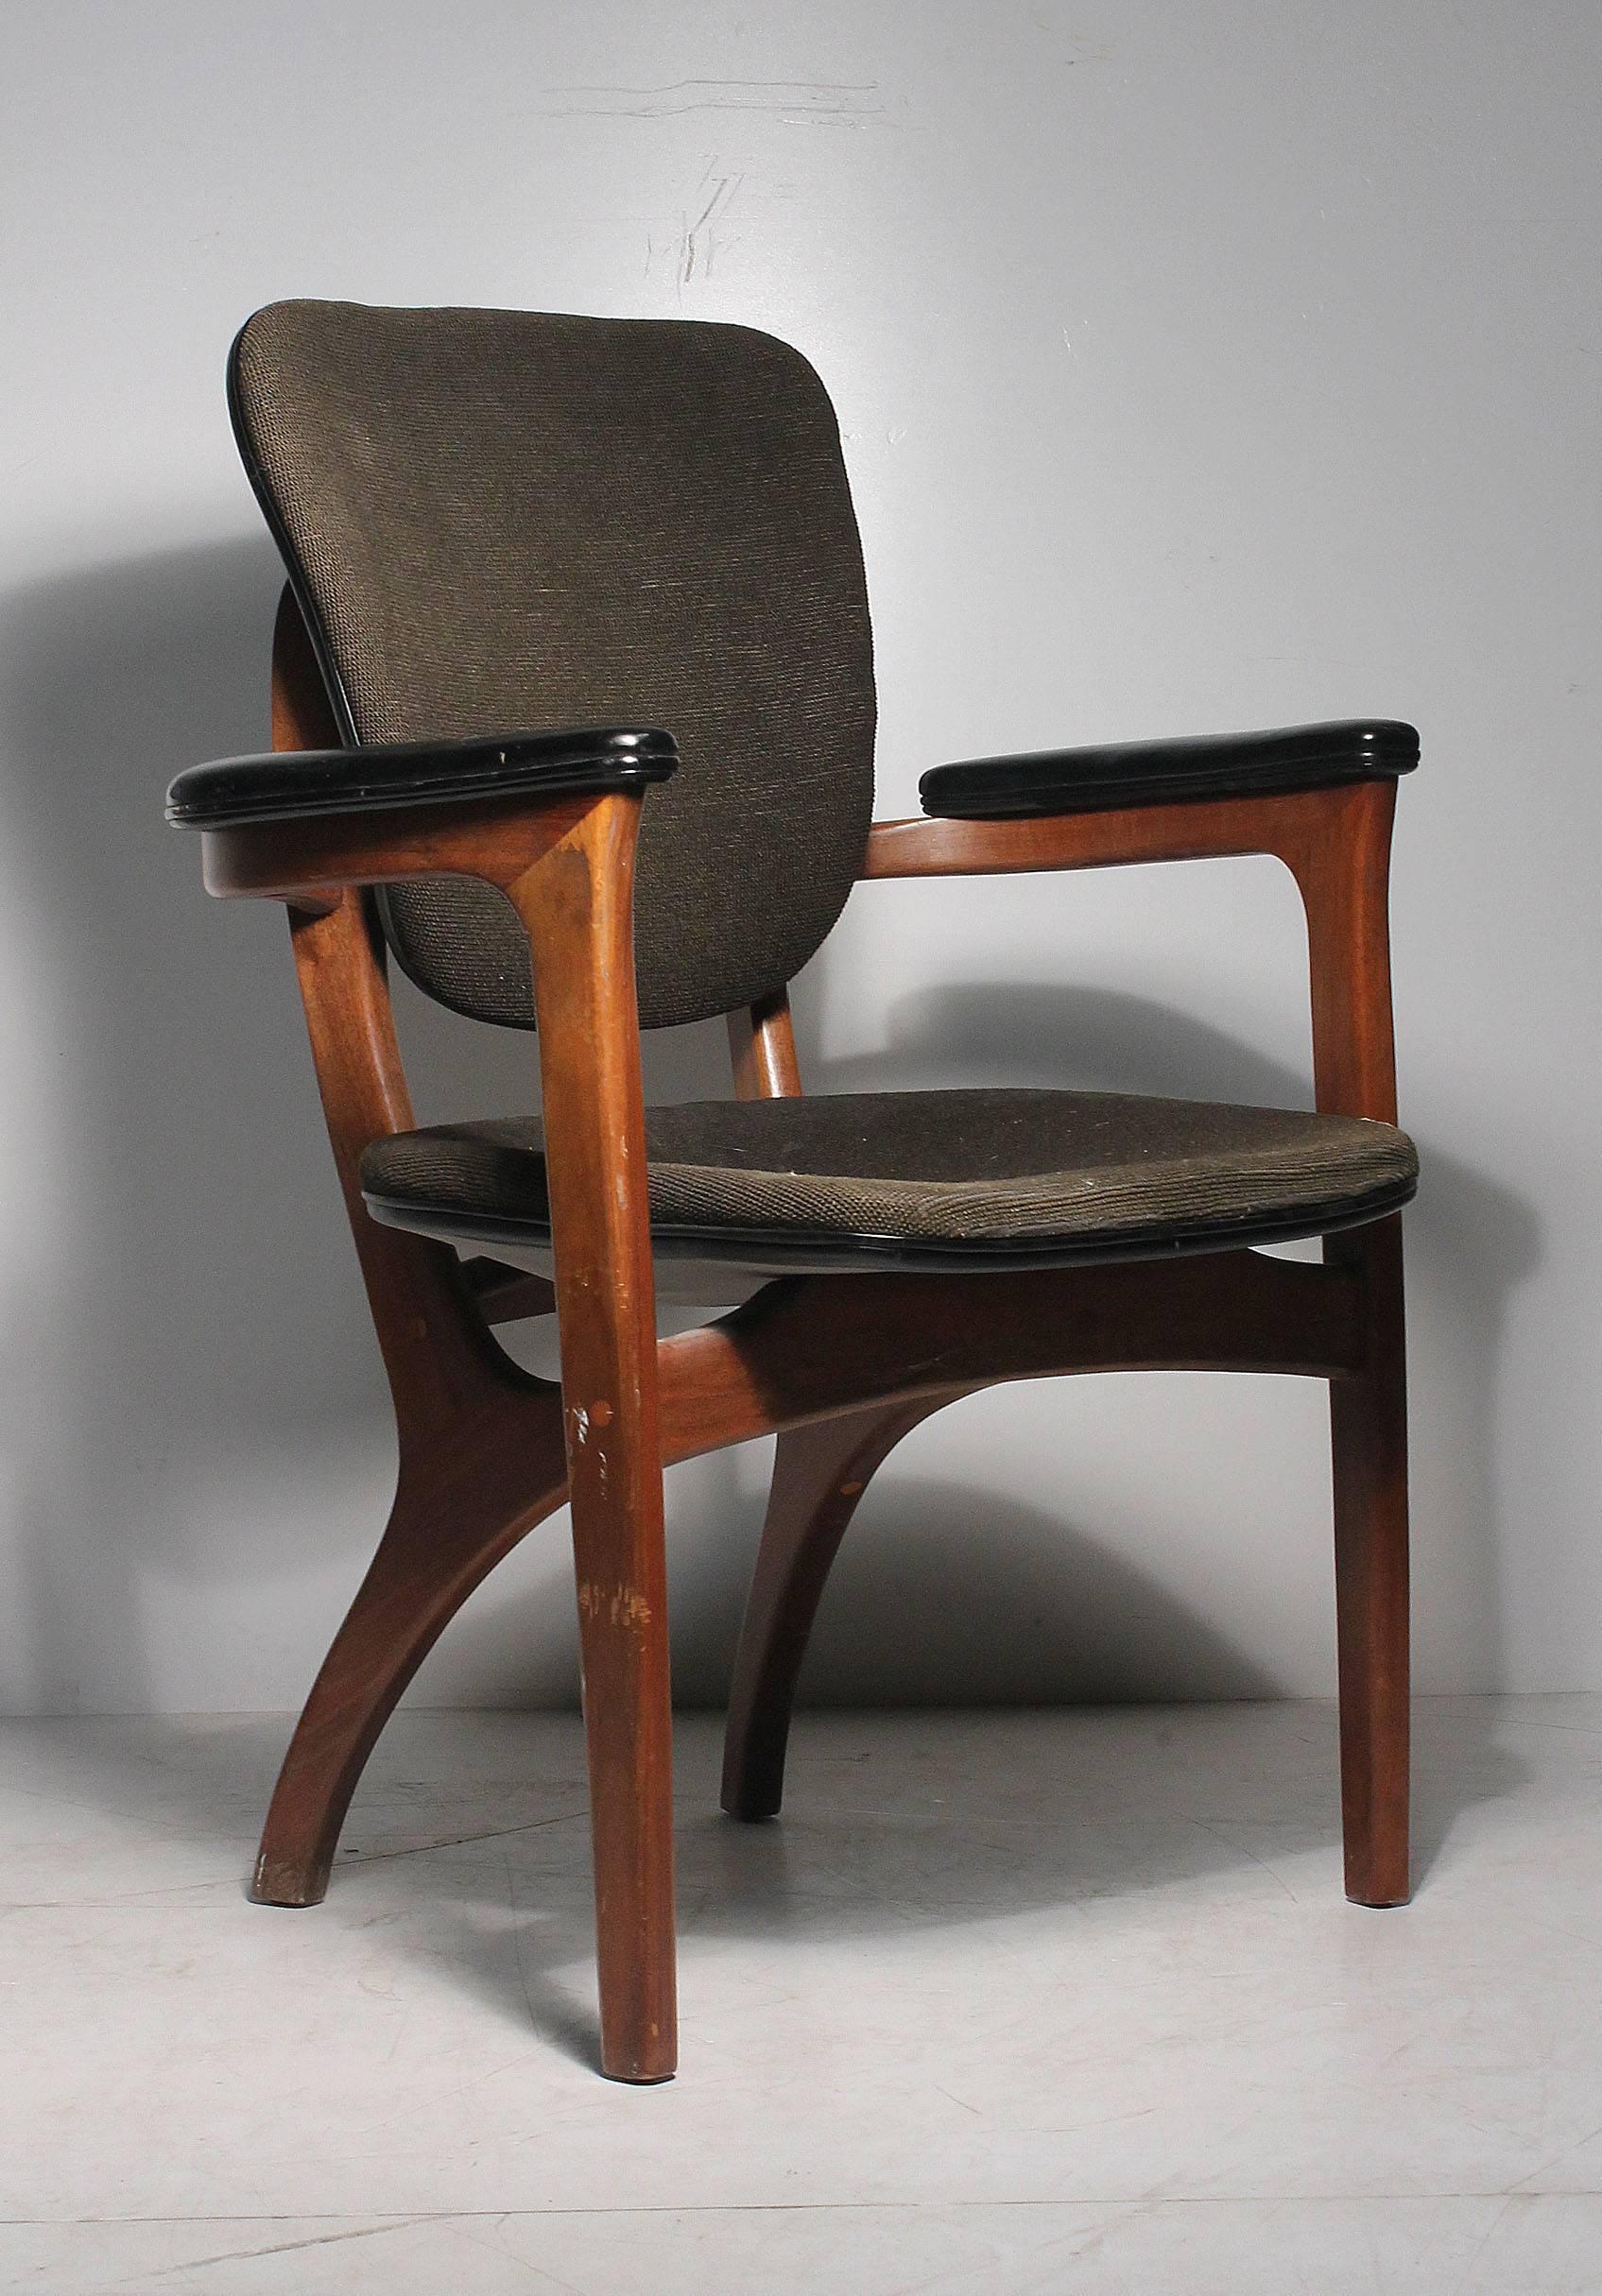 Ein seltener Adrian Pearsall Sessel. 

Einige Abnutzungserscheinungen am Originallack. Zum Reinigen werde ich einen einfachen Kratzerentferner auftragen. Die Polsterung ist original und muss höchstwahrscheinlich neu gepolstert werden. Schaumstoff